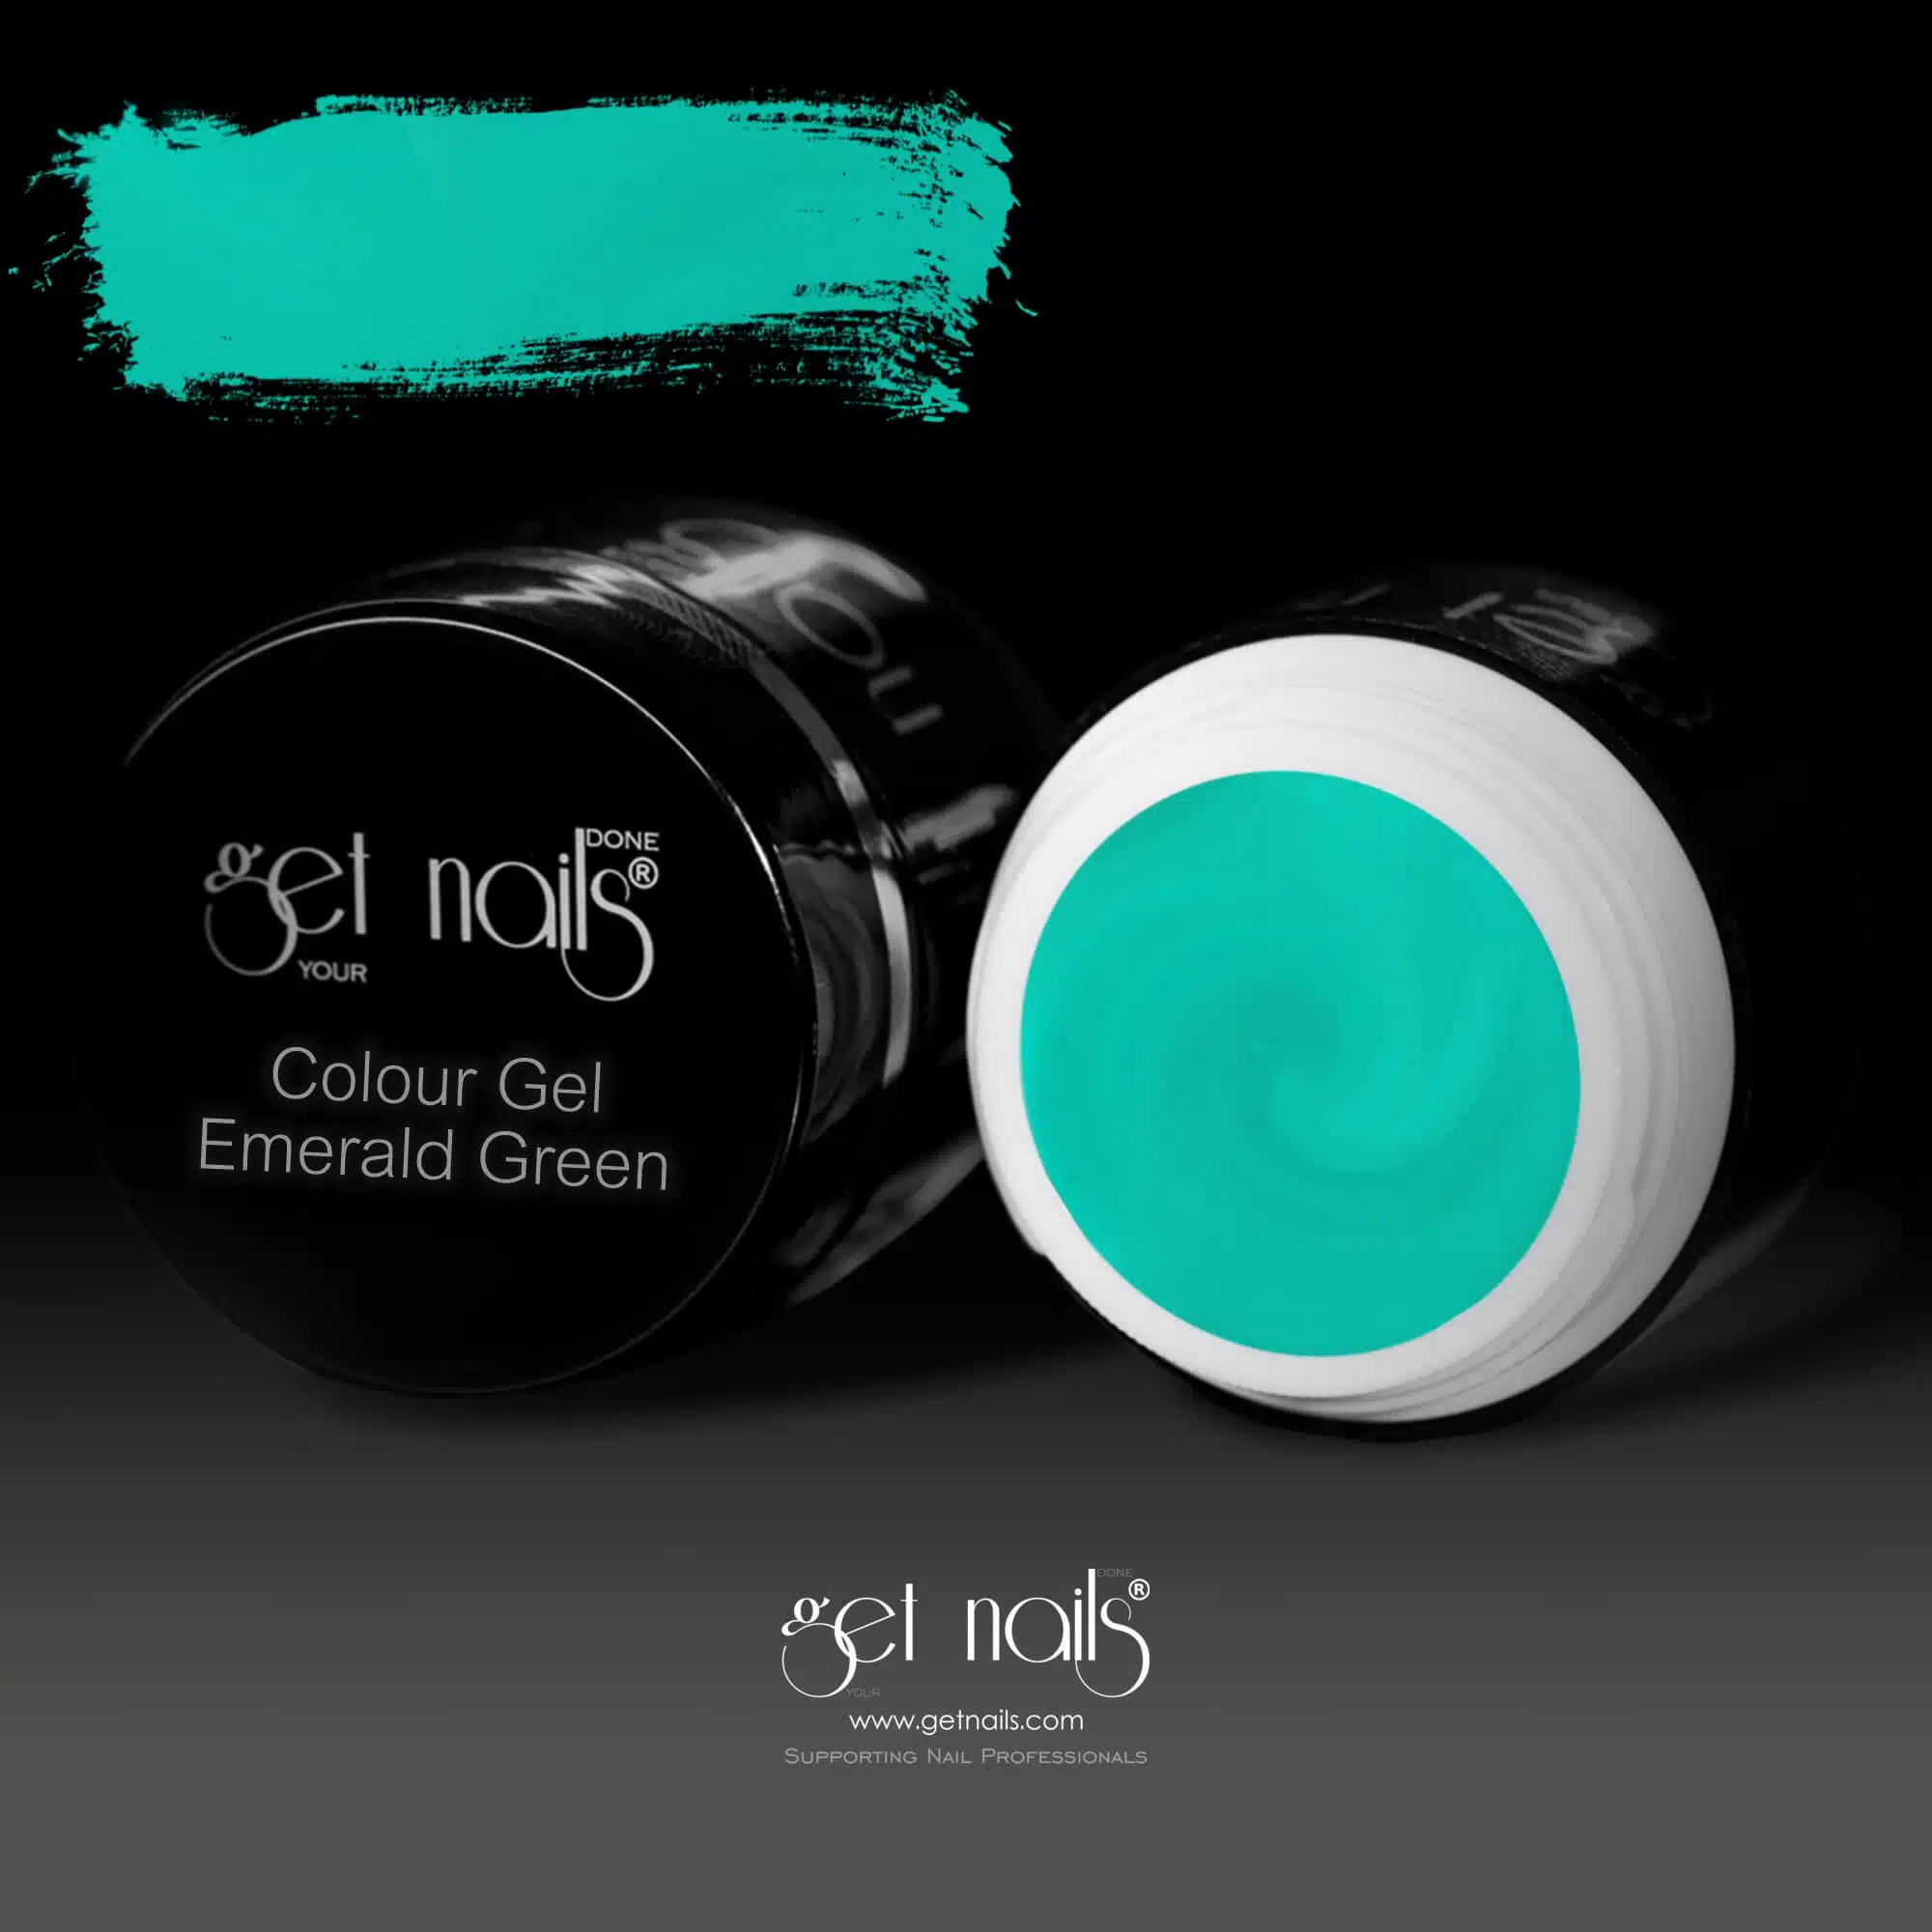 Get Nails Austria - Color Gel Emerald Green 5g